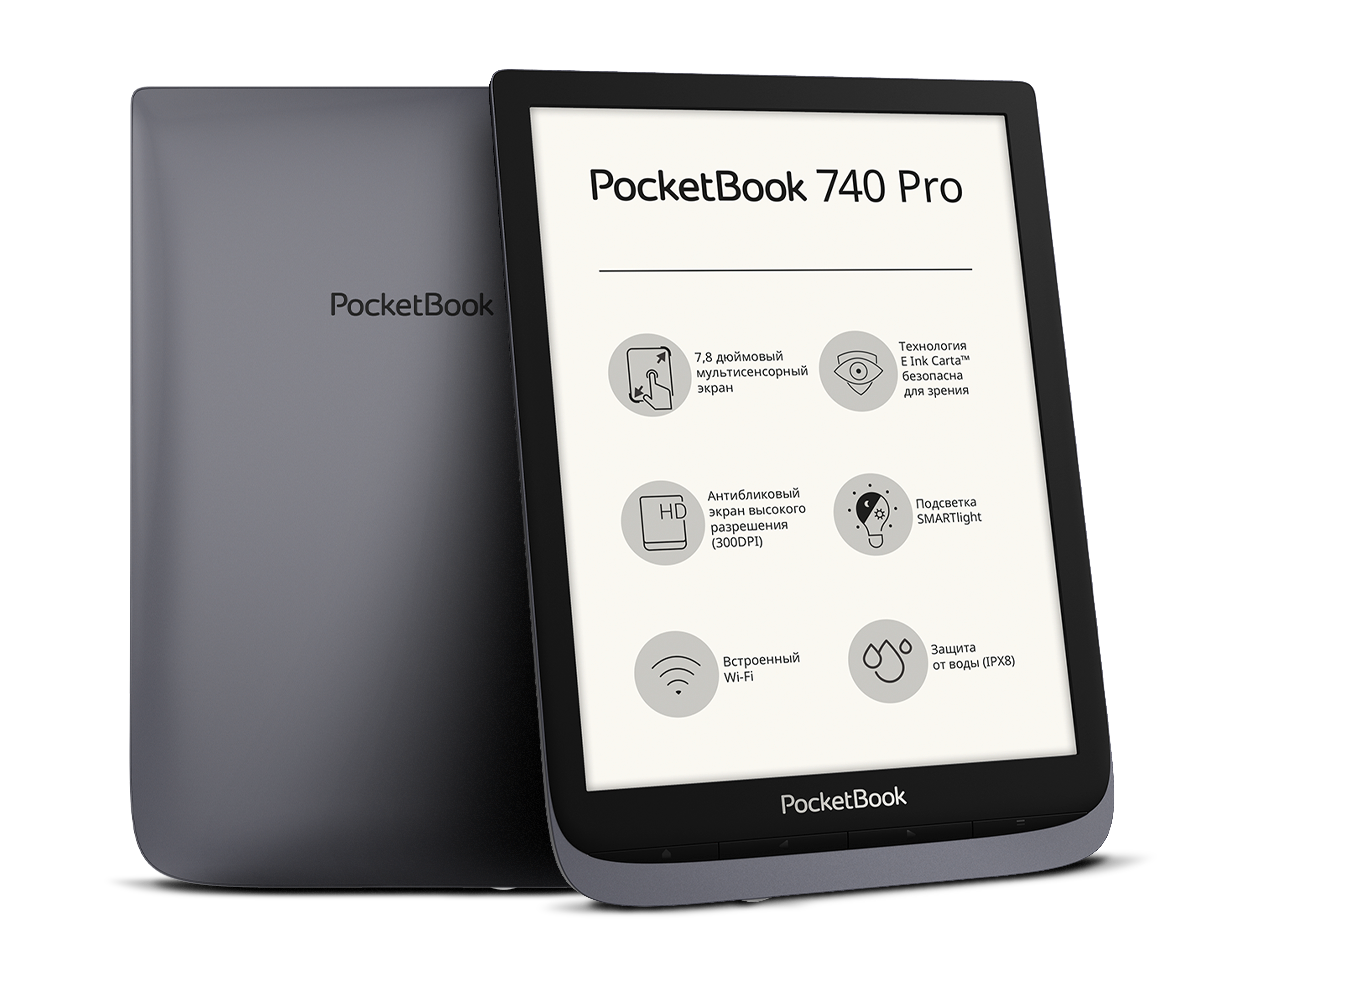 POCKETBOOK 740 Pro. POCKETBOOK 740 Pro / Inkpad 3 Pro. POCKETBOOK 740 Aqua. Pocketbook inkpad 3 pro